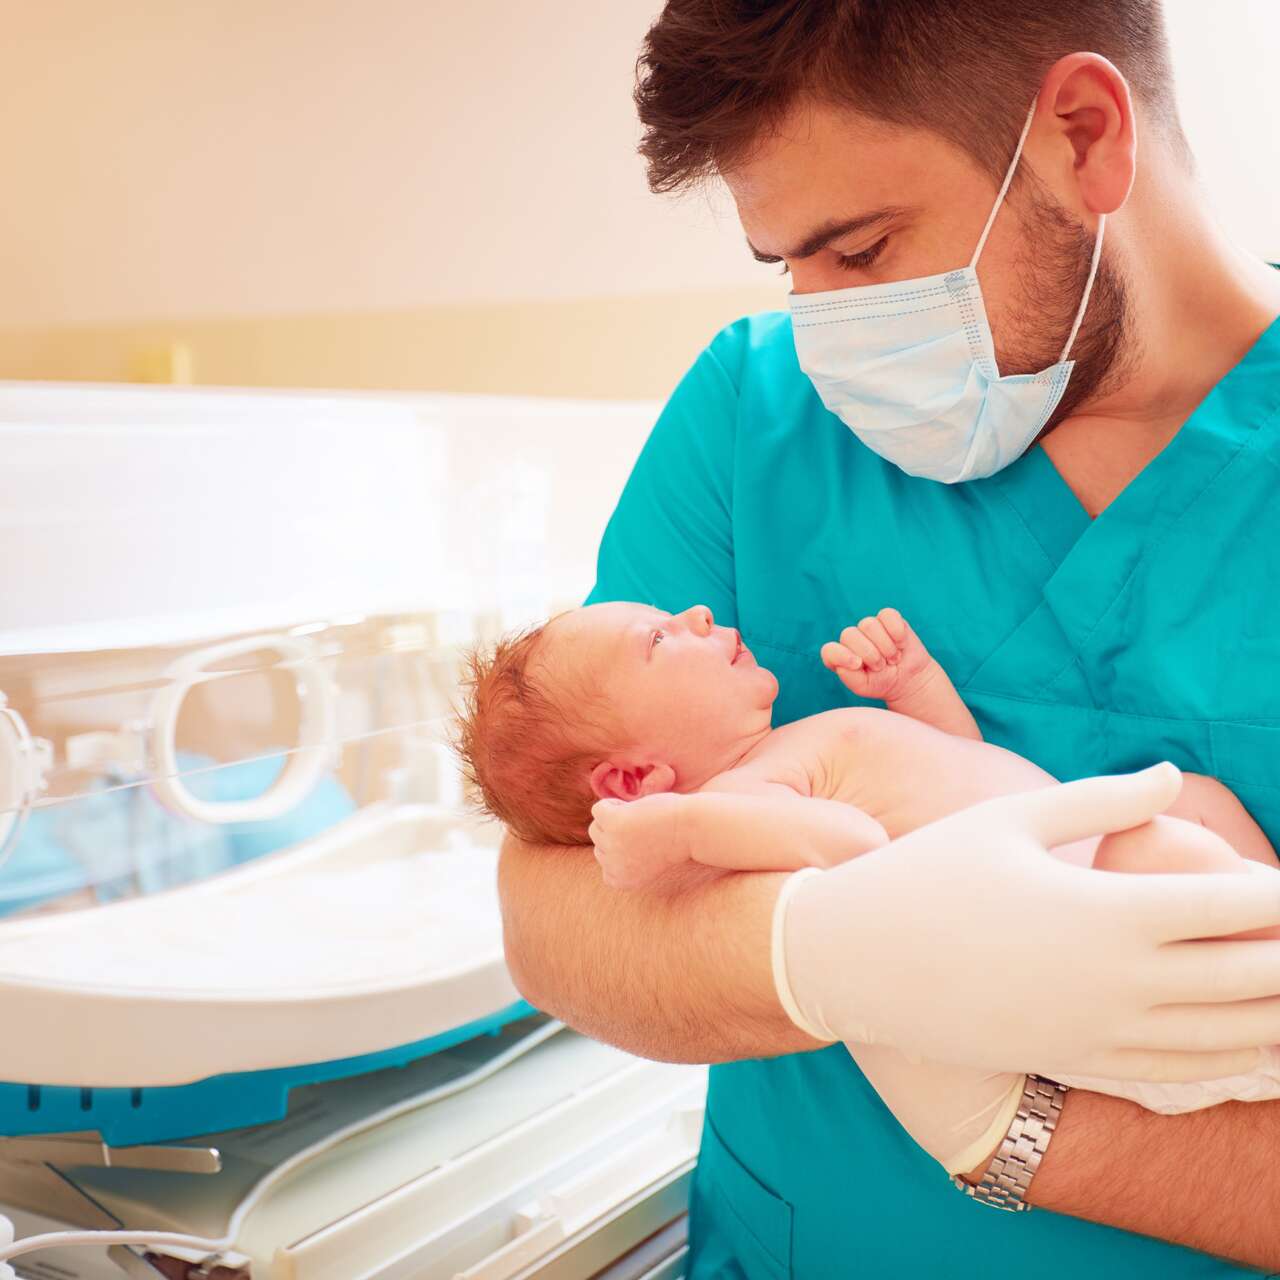 Des bébés échangés à la naissance dans un grand hôpital bulgare